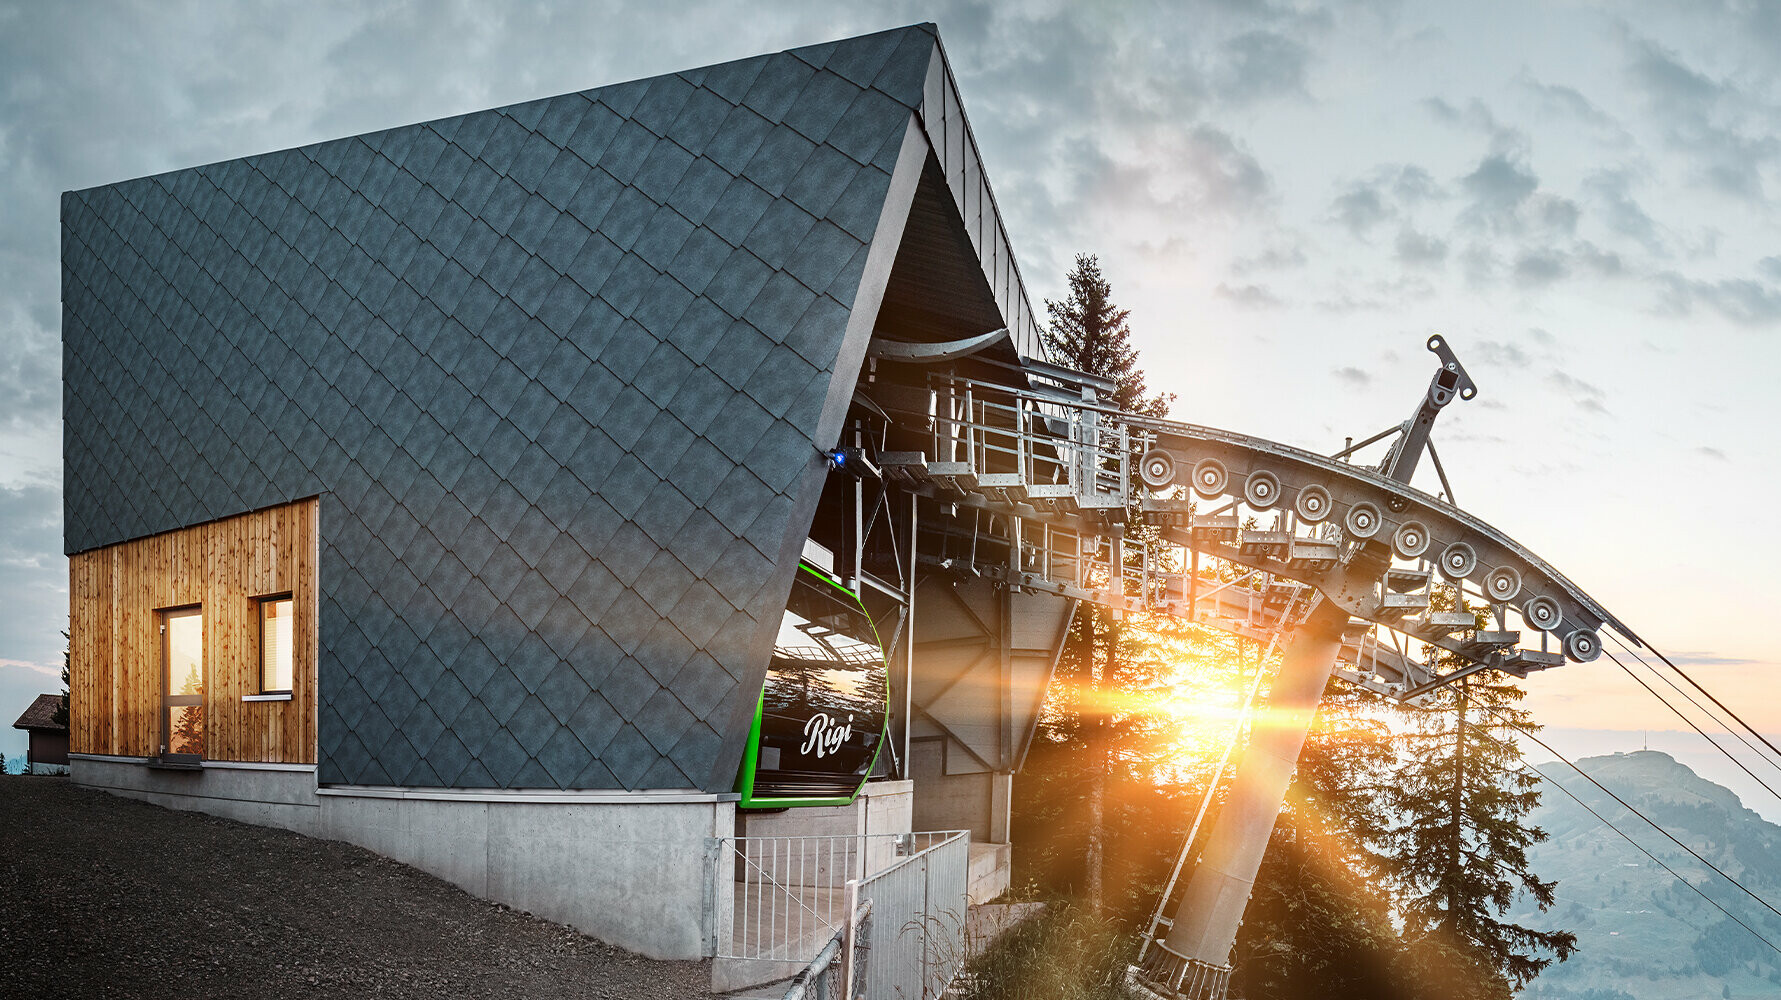 Luftseilbahn mit PREFA Dach und Fassade in der Schweiz bei Sonnenuntergang.